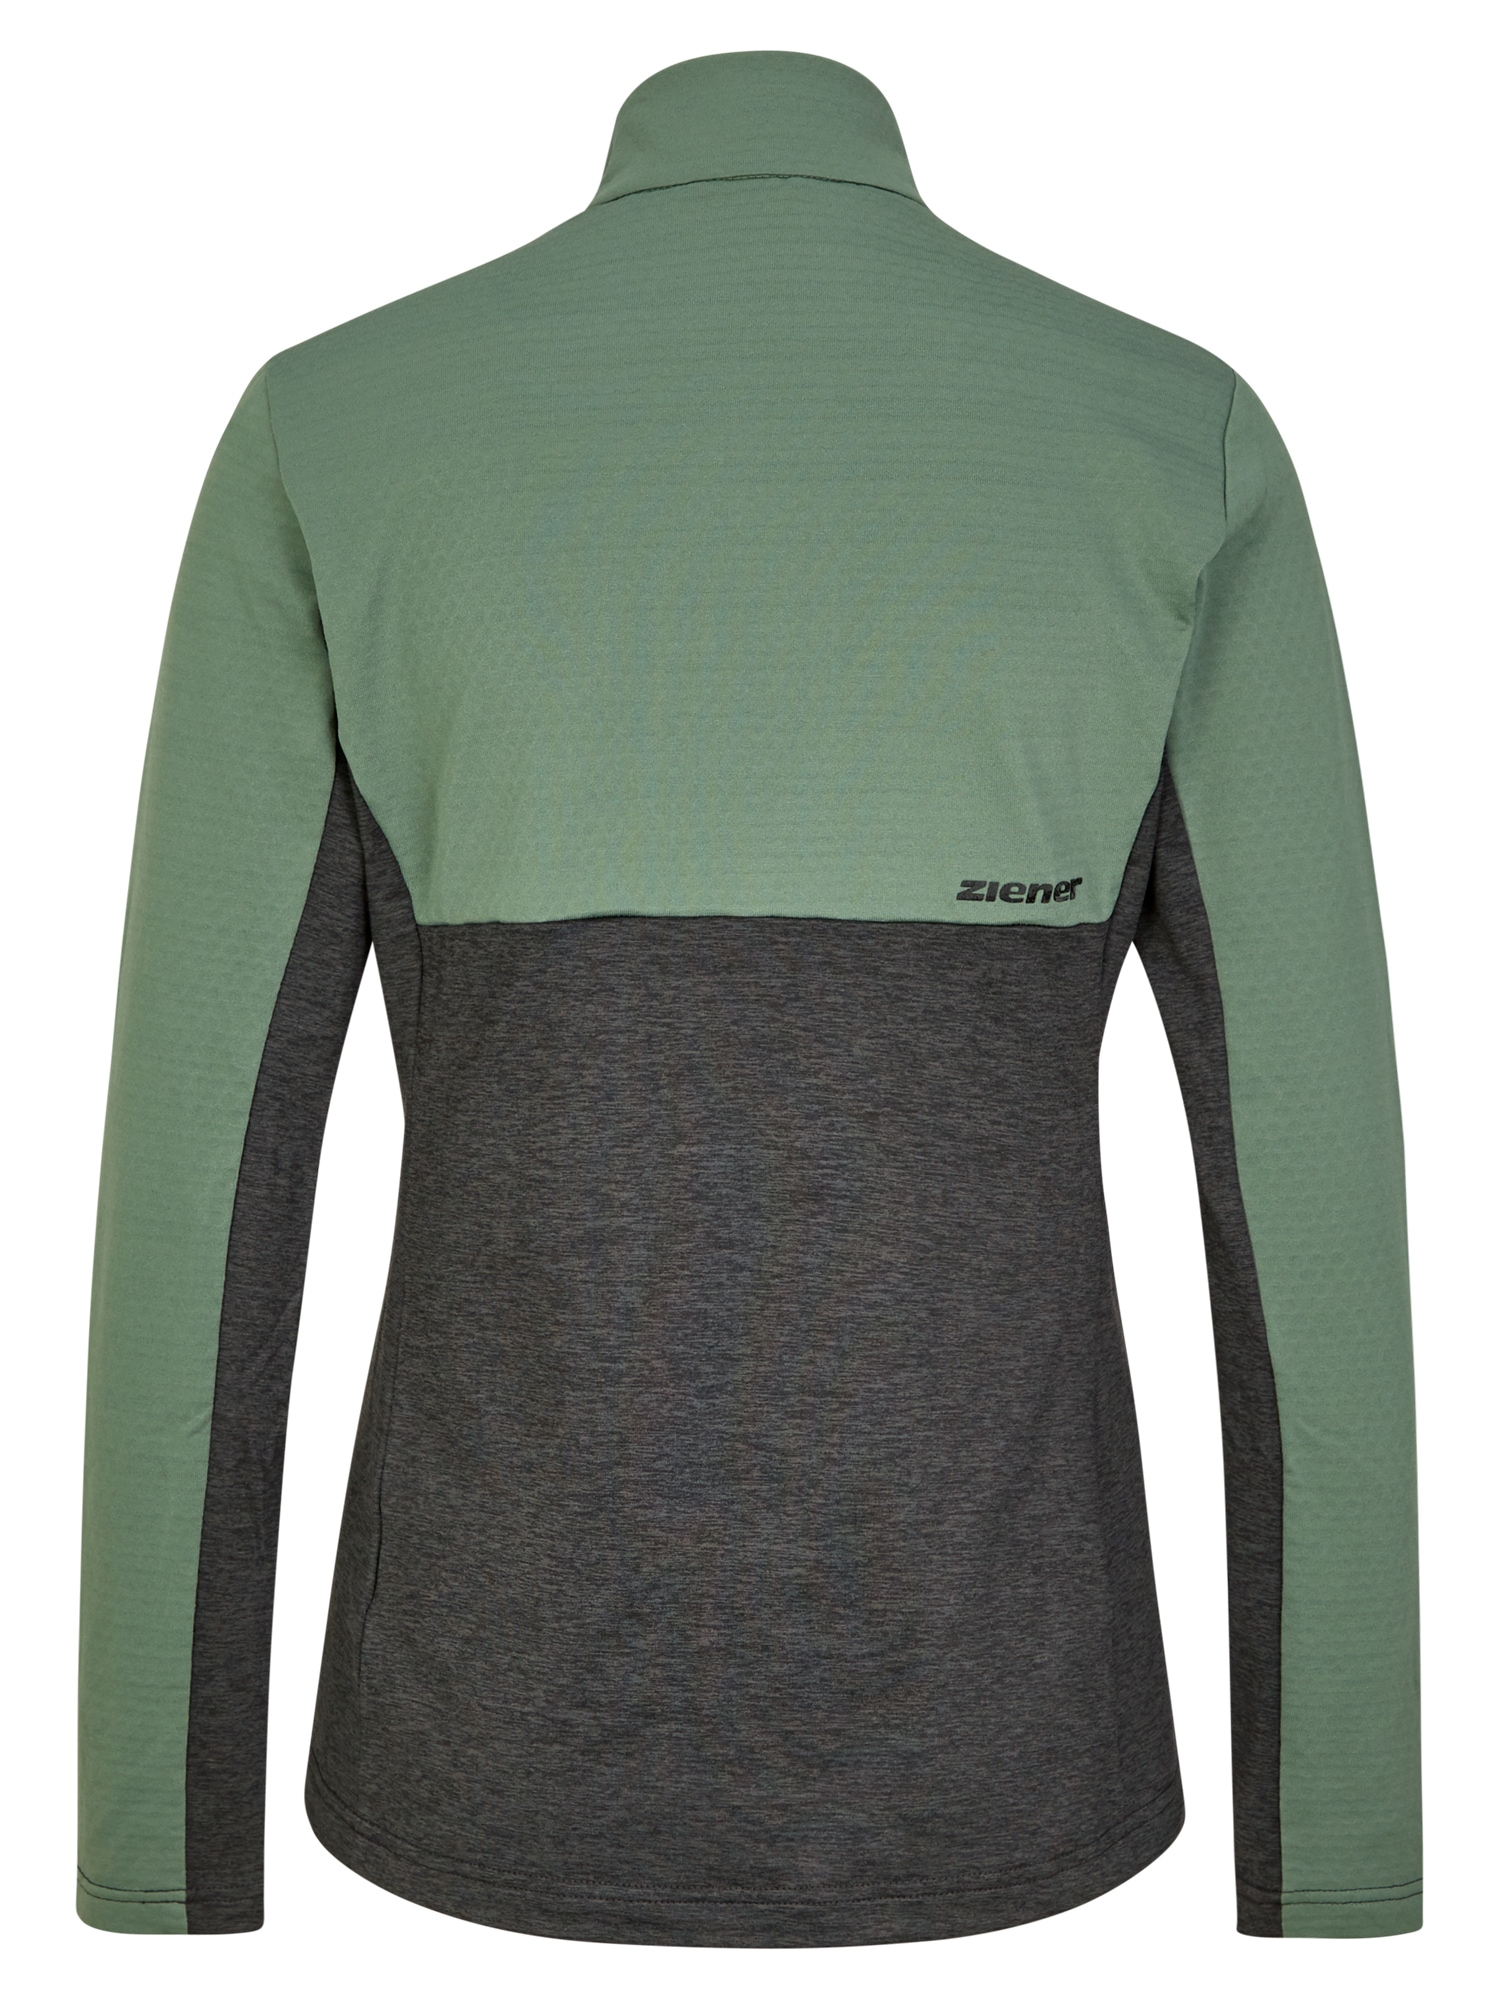 Shop »JAPRA« OTTO Online Ziener Sweater im